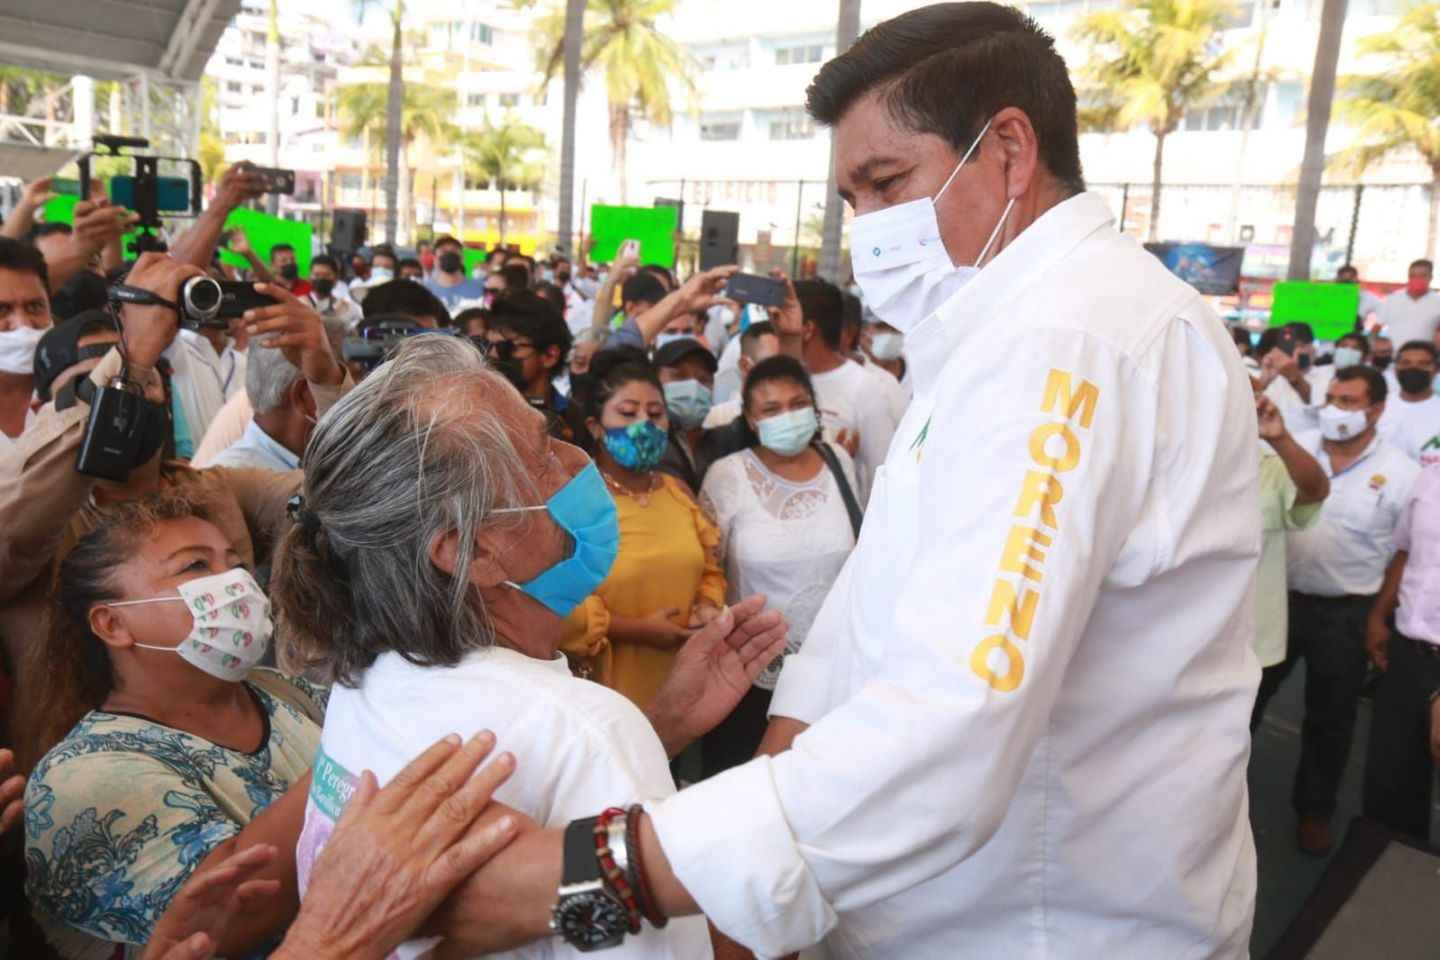 Mario Moreno ’serás el gobernador y ayudarás a la población’, le dicen en Acapulco